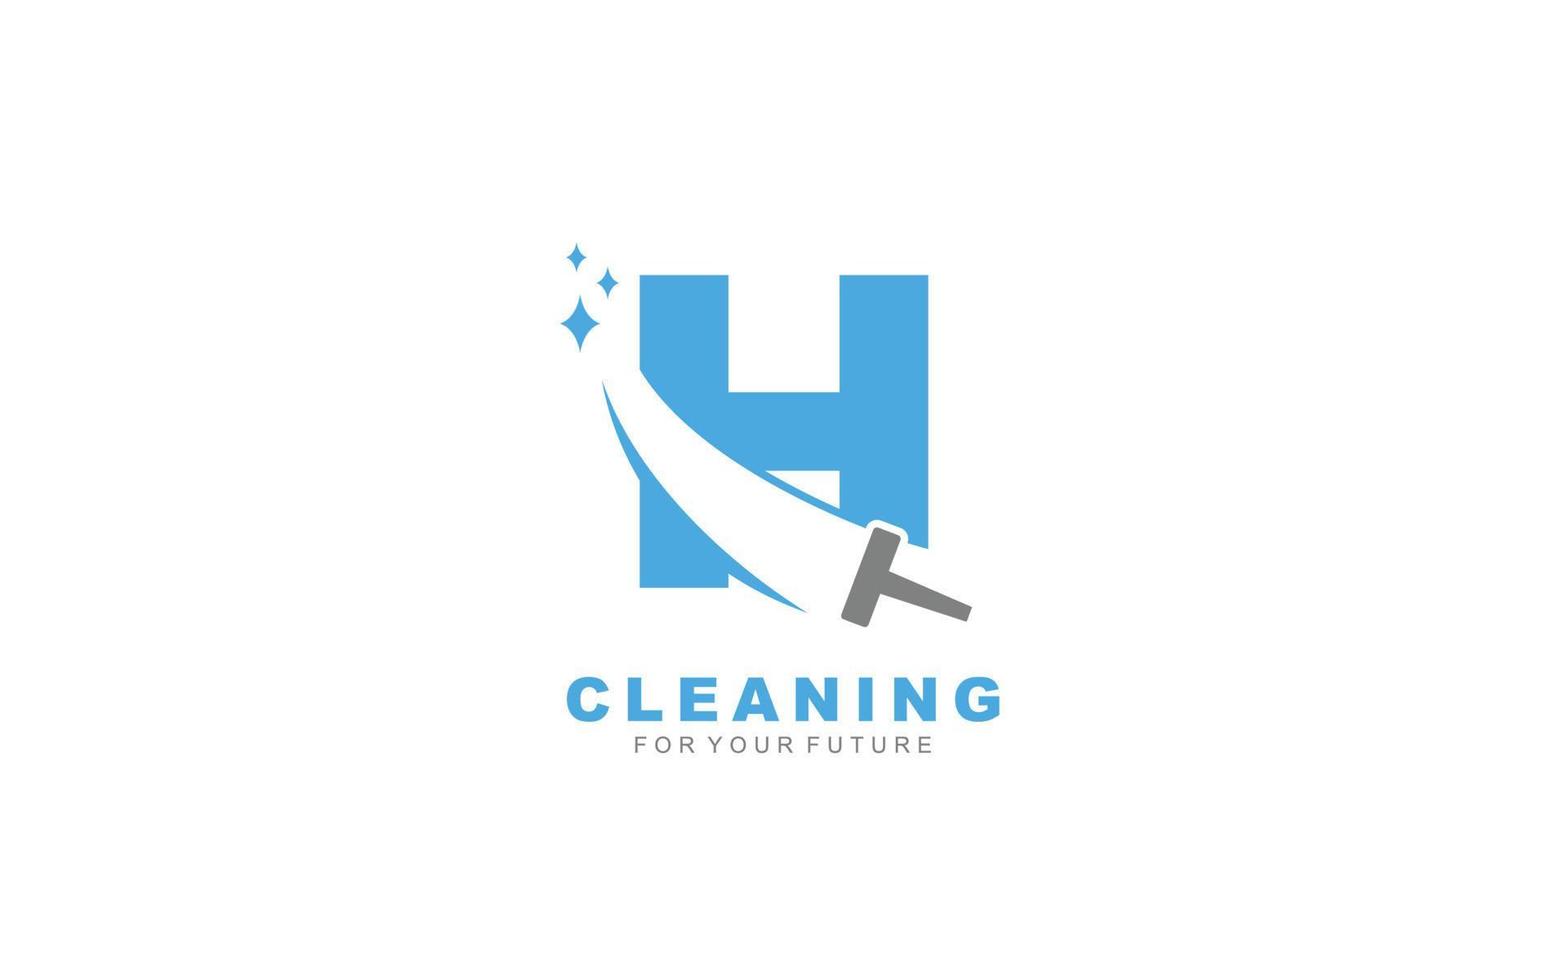 Servicios de limpieza de logotipo h para empresa de marca. ilustración de vector de plantilla de tareas domésticas para su marca.